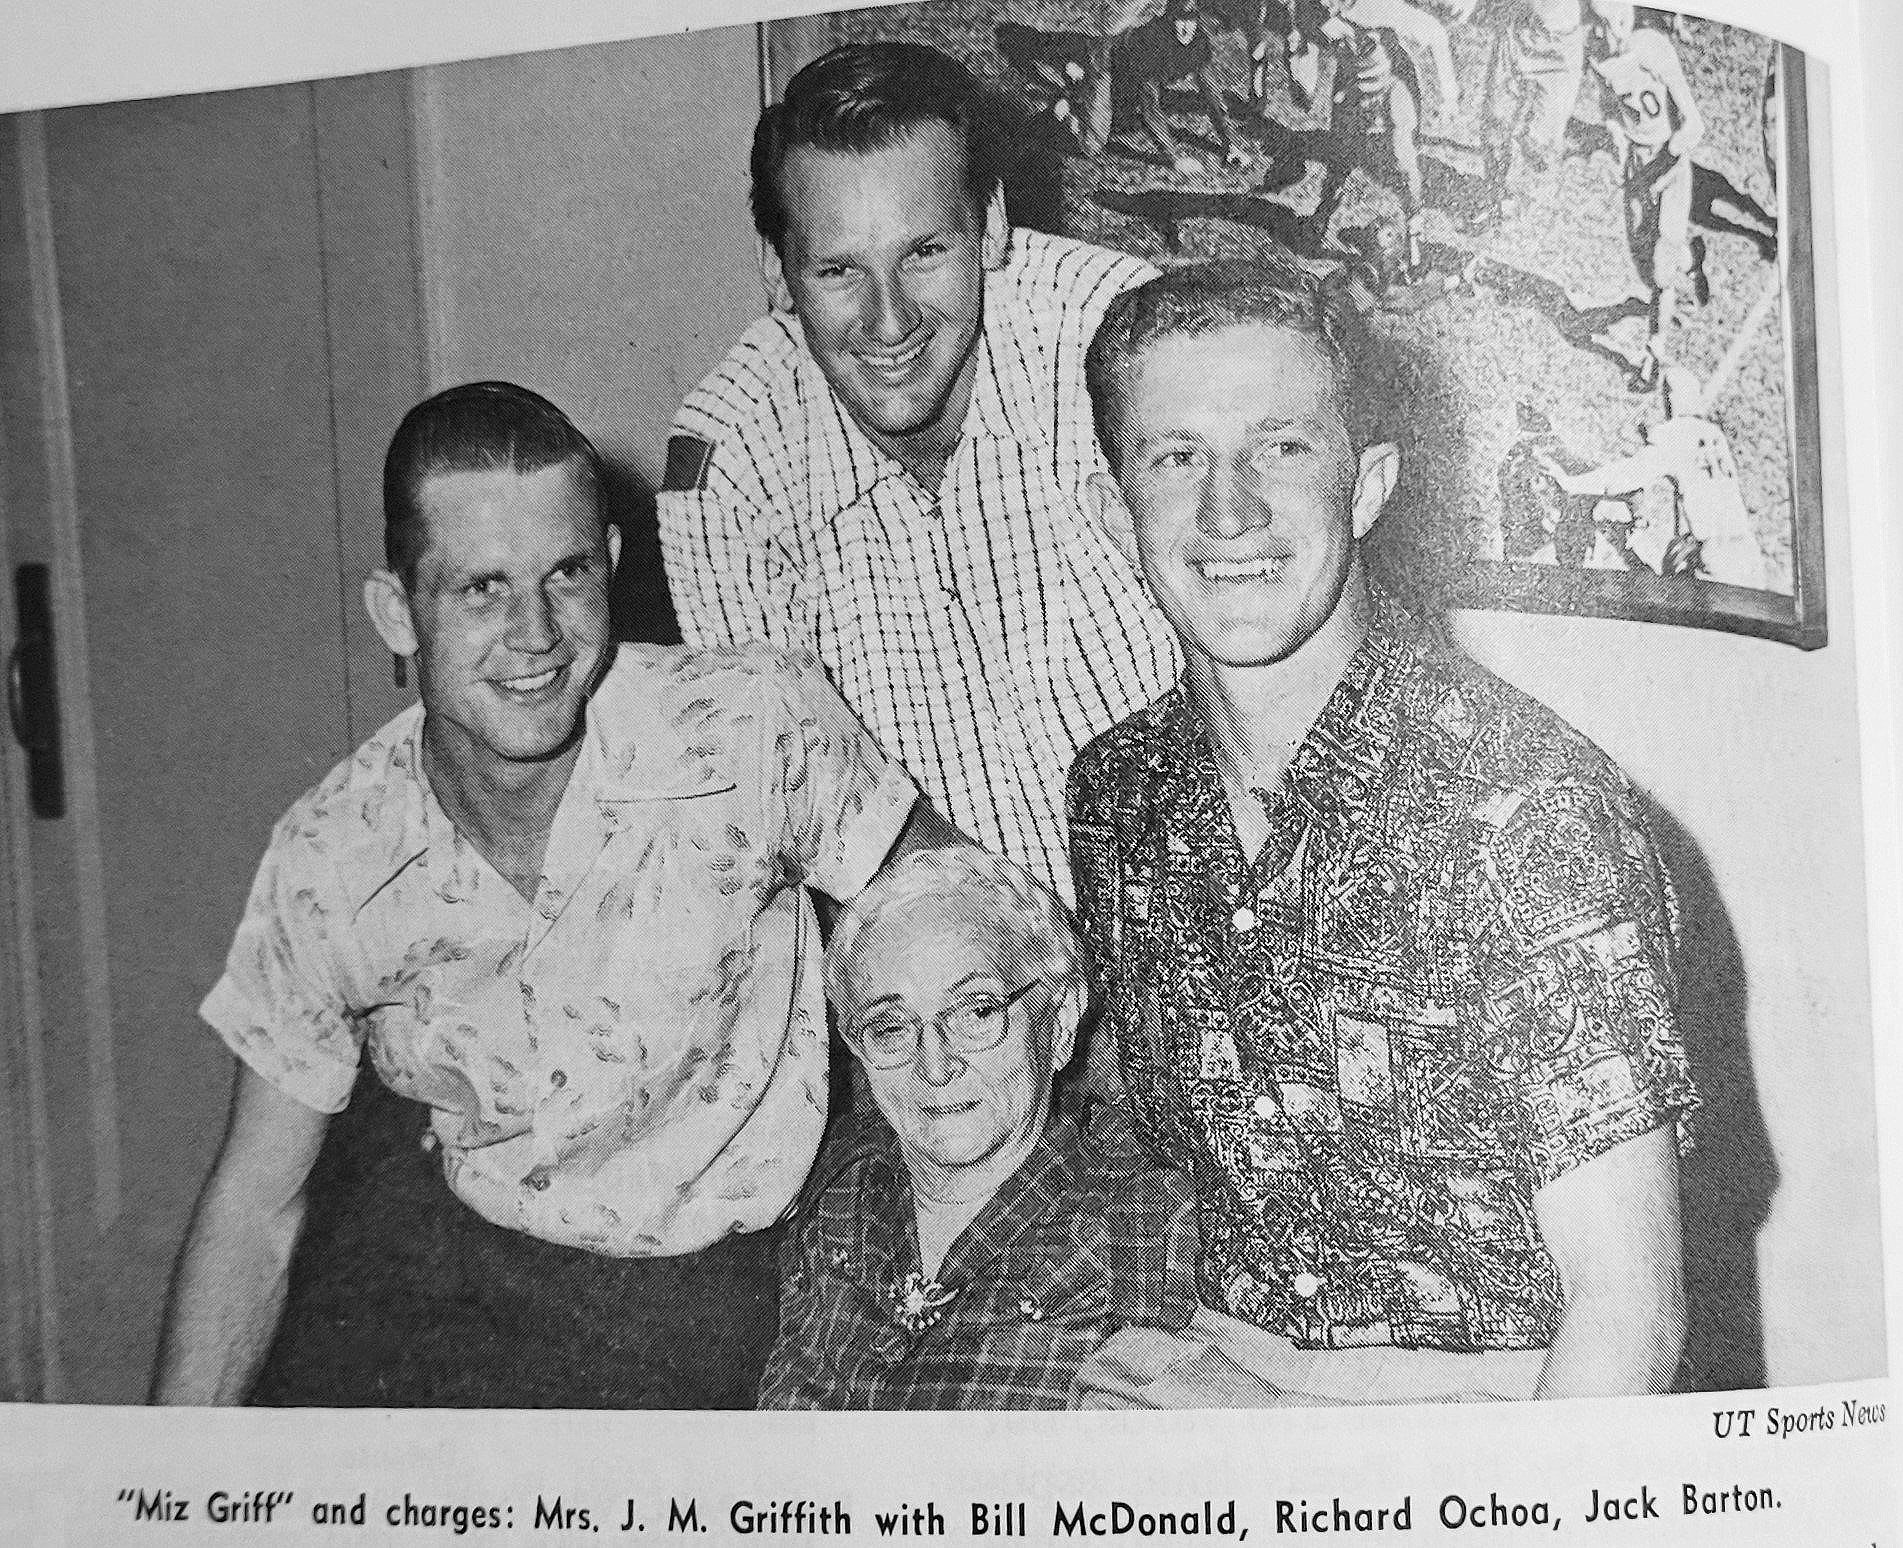  Bill McDonald,  Richard Ochoa, Jack Barton, and Ma Griffith 